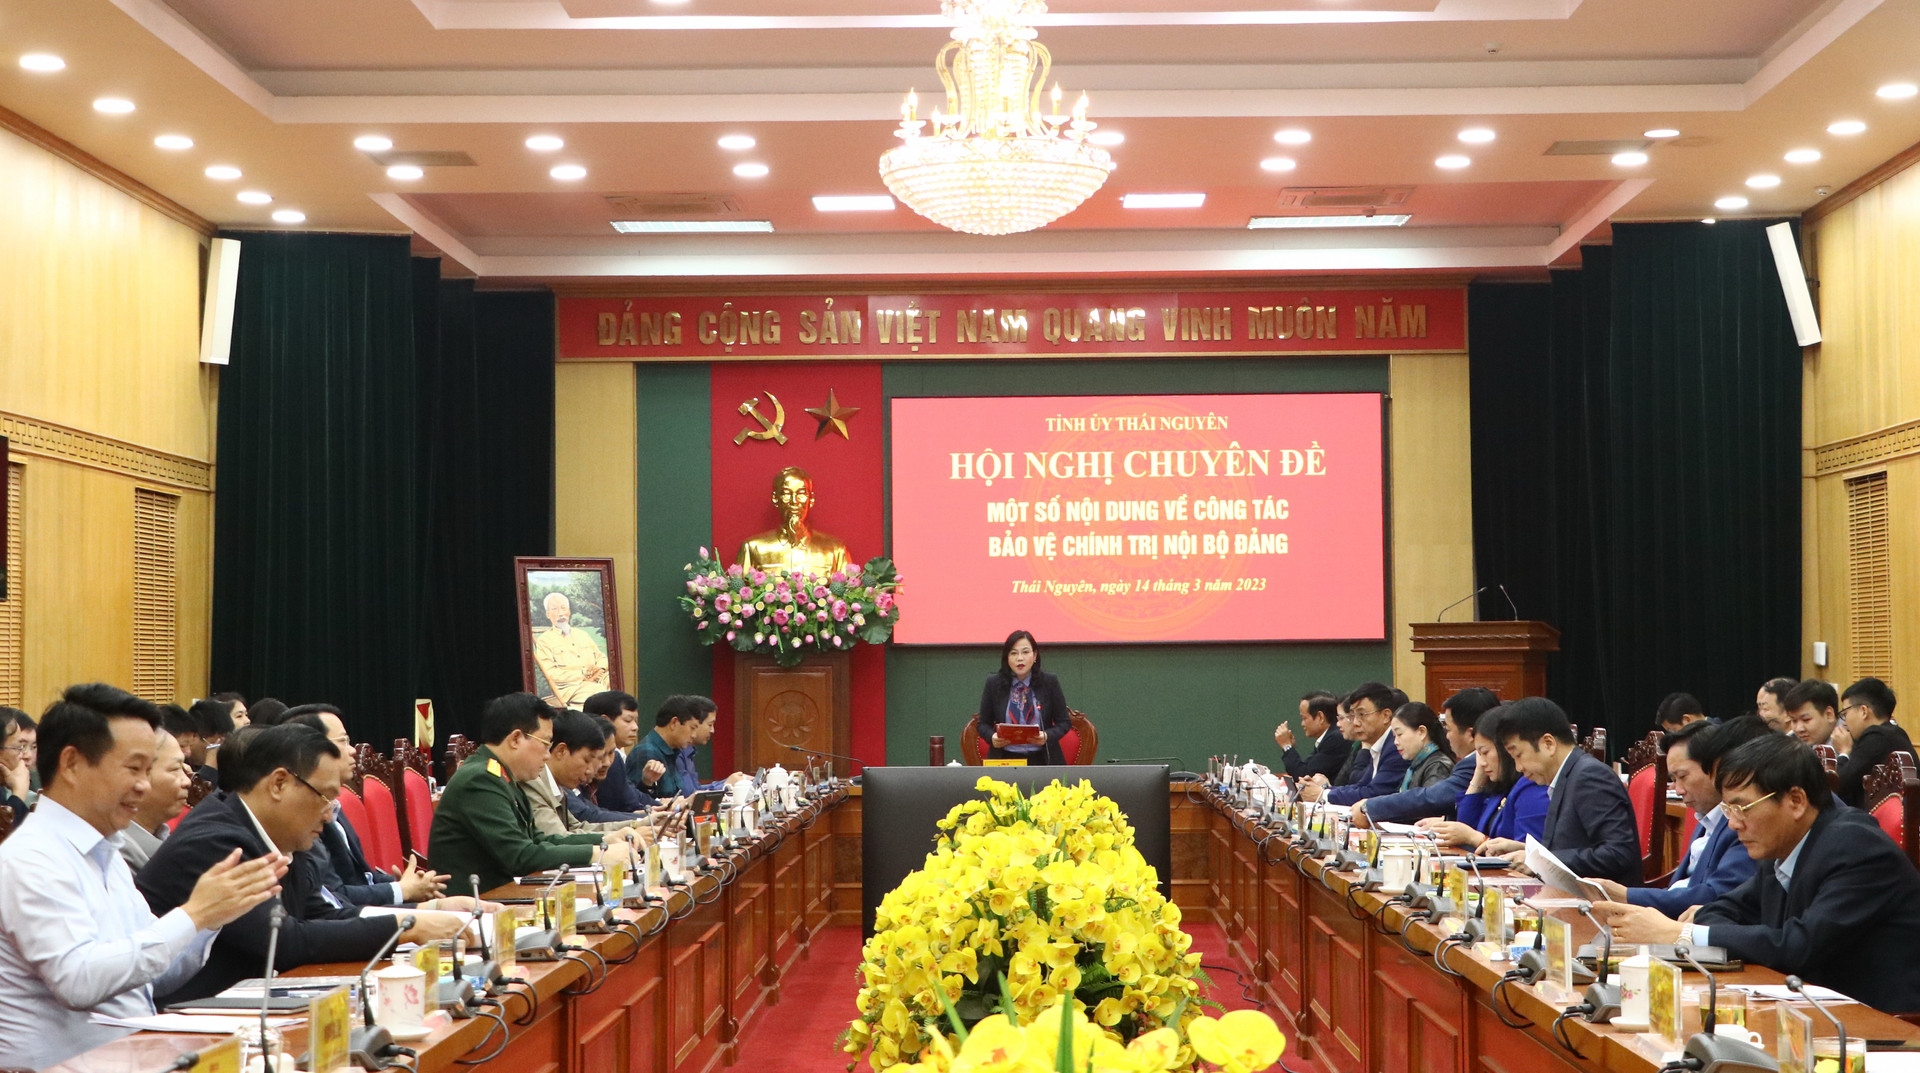 Thái Nguyên tổ chức Hội nghị chuyên đề về công tác bảo vệ chính trị nội bộ Đảng